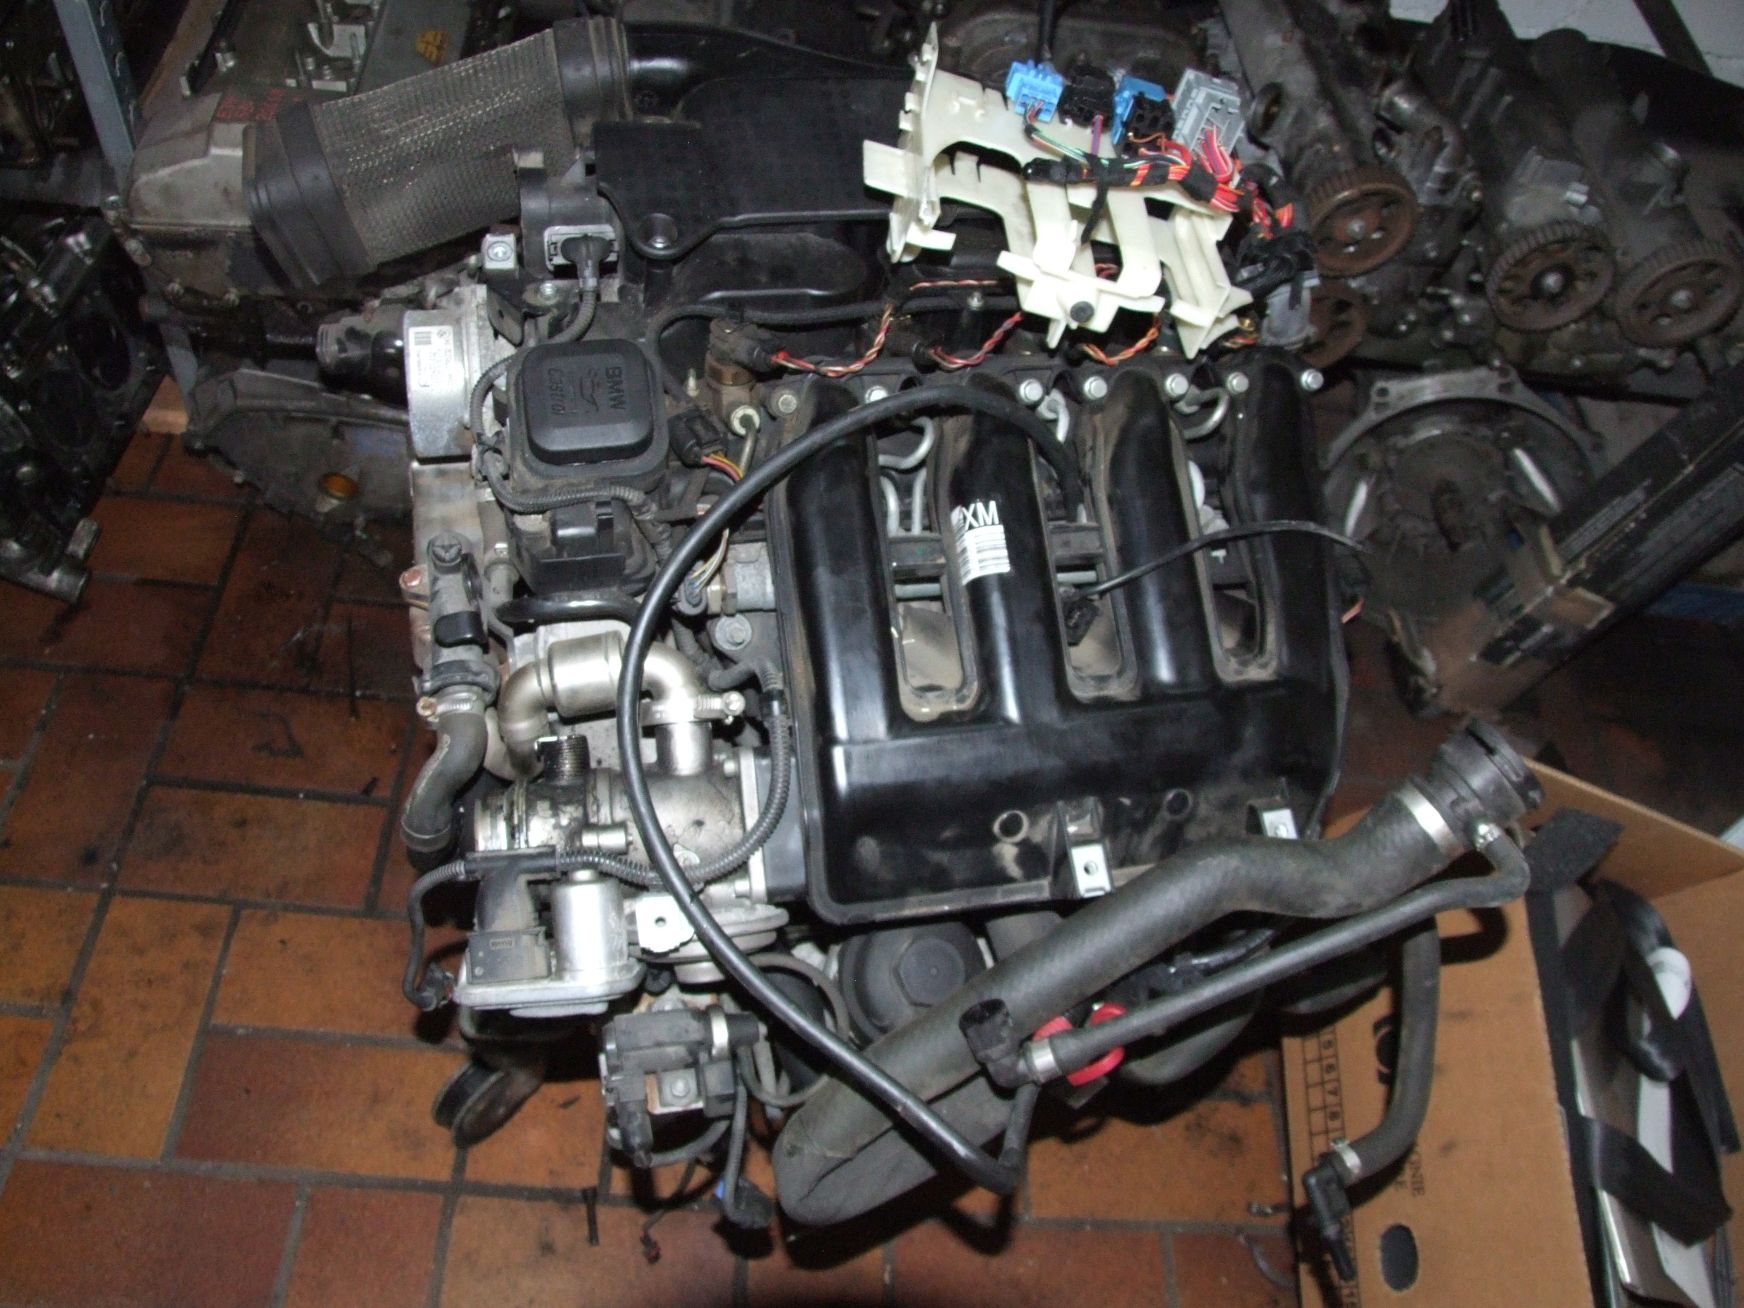 Motor aus BMW E90 Code 204D4 BMW M47 D20 (gebraucht)